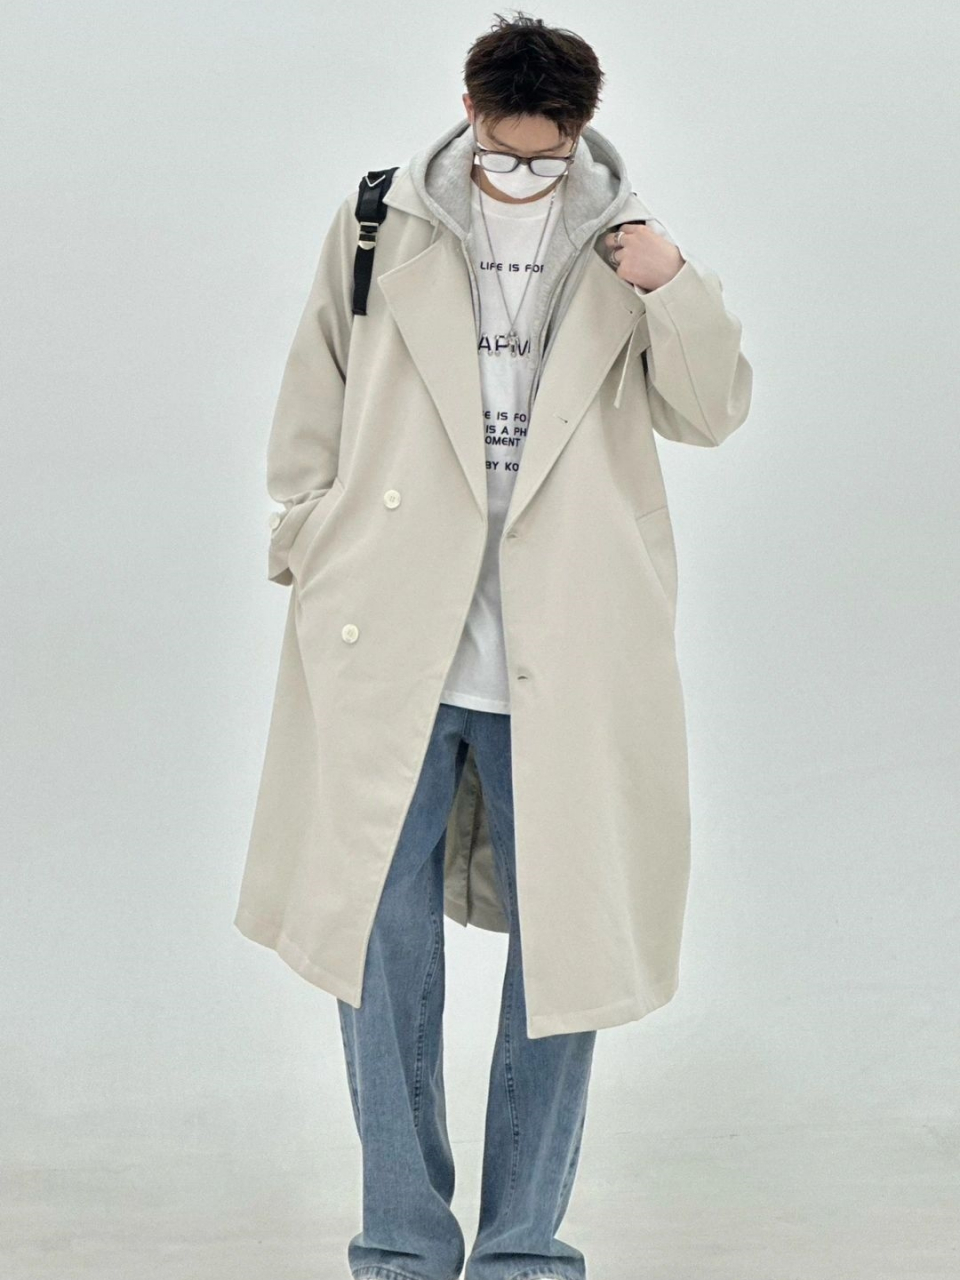 秋冬教科书式男生穿搭  韩风穿搭是时尚界永恒的神话,不容置疑